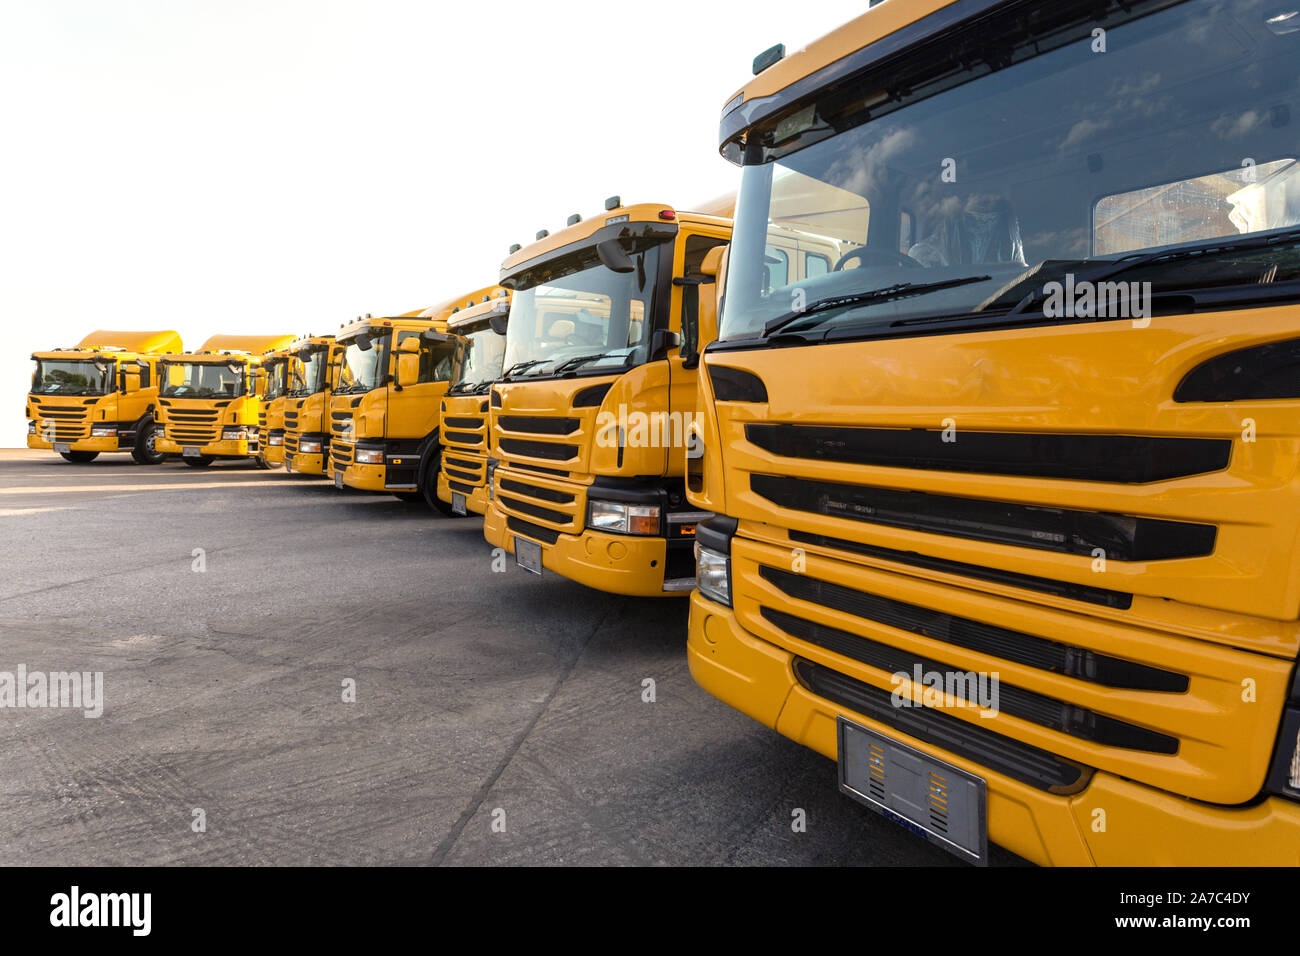 Nouvelle voiture camion remorque jaune flotte avec dépôt de conteneurs sur le parking de l'usine de fabrication de camions pour livrer aux affaires voyage et une compagnie logistique cl Banque D'Images